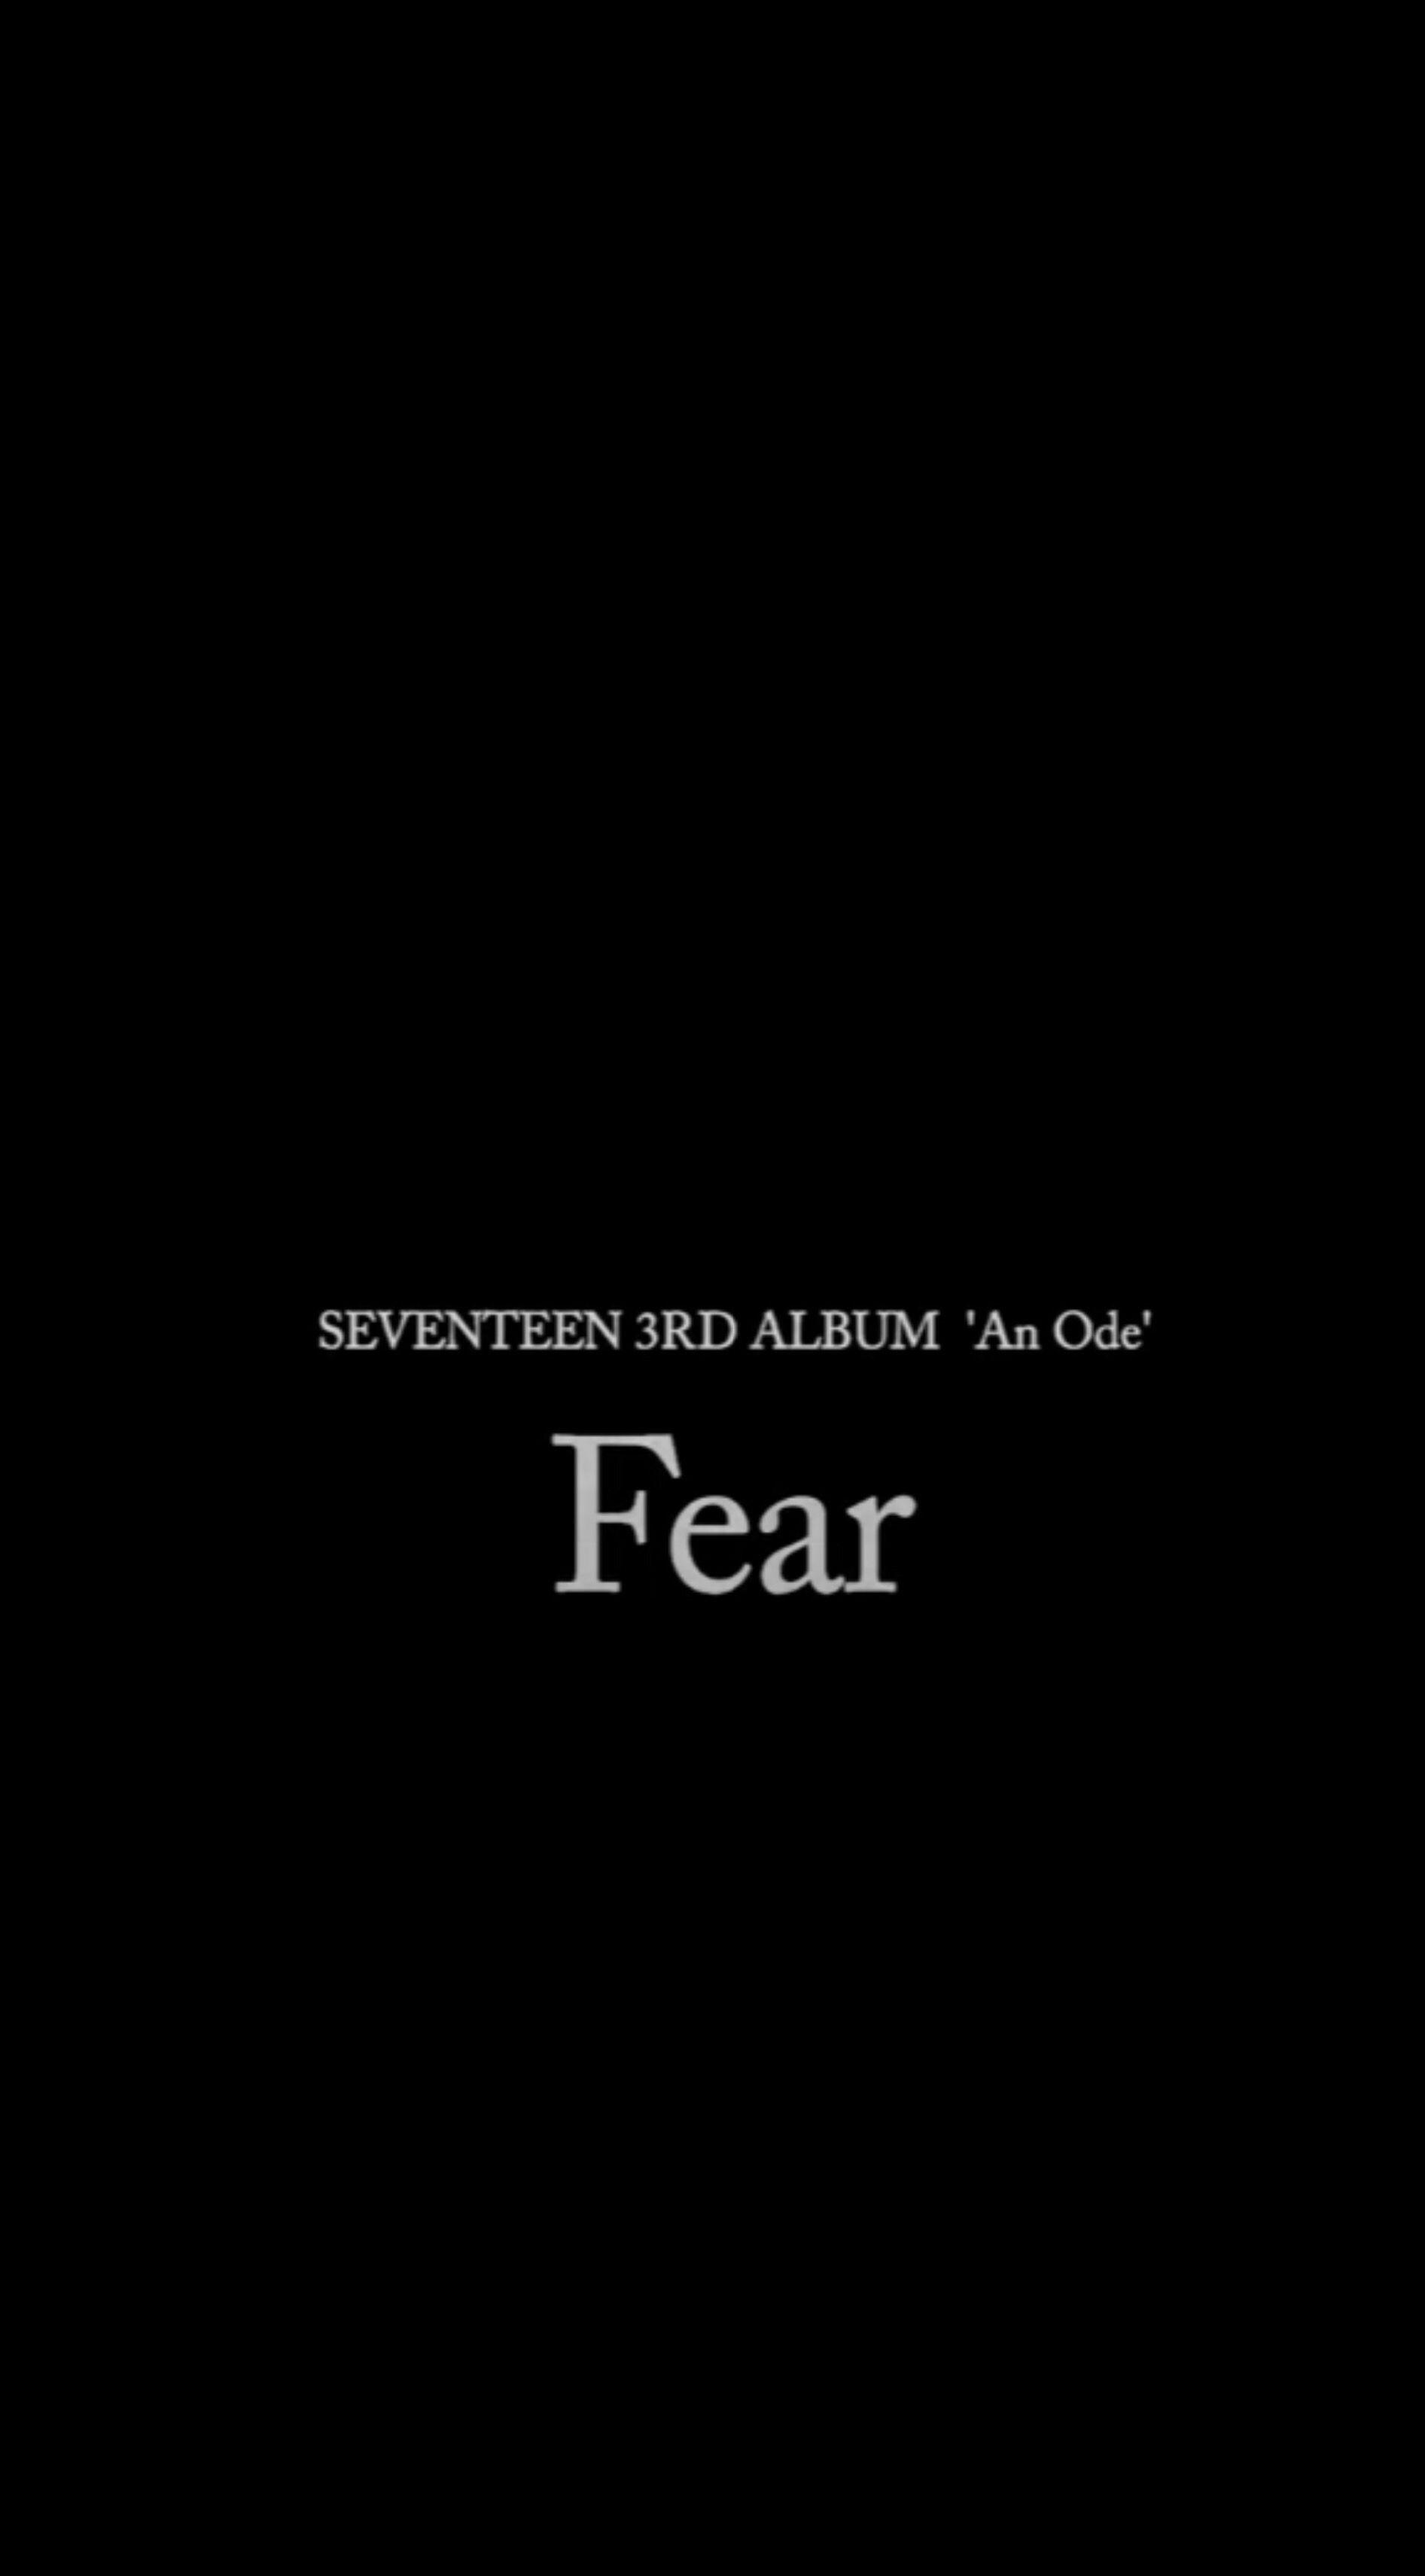 Seventeen “Fear” Wallpaper. Seventeen, Kpop, Wallpaper